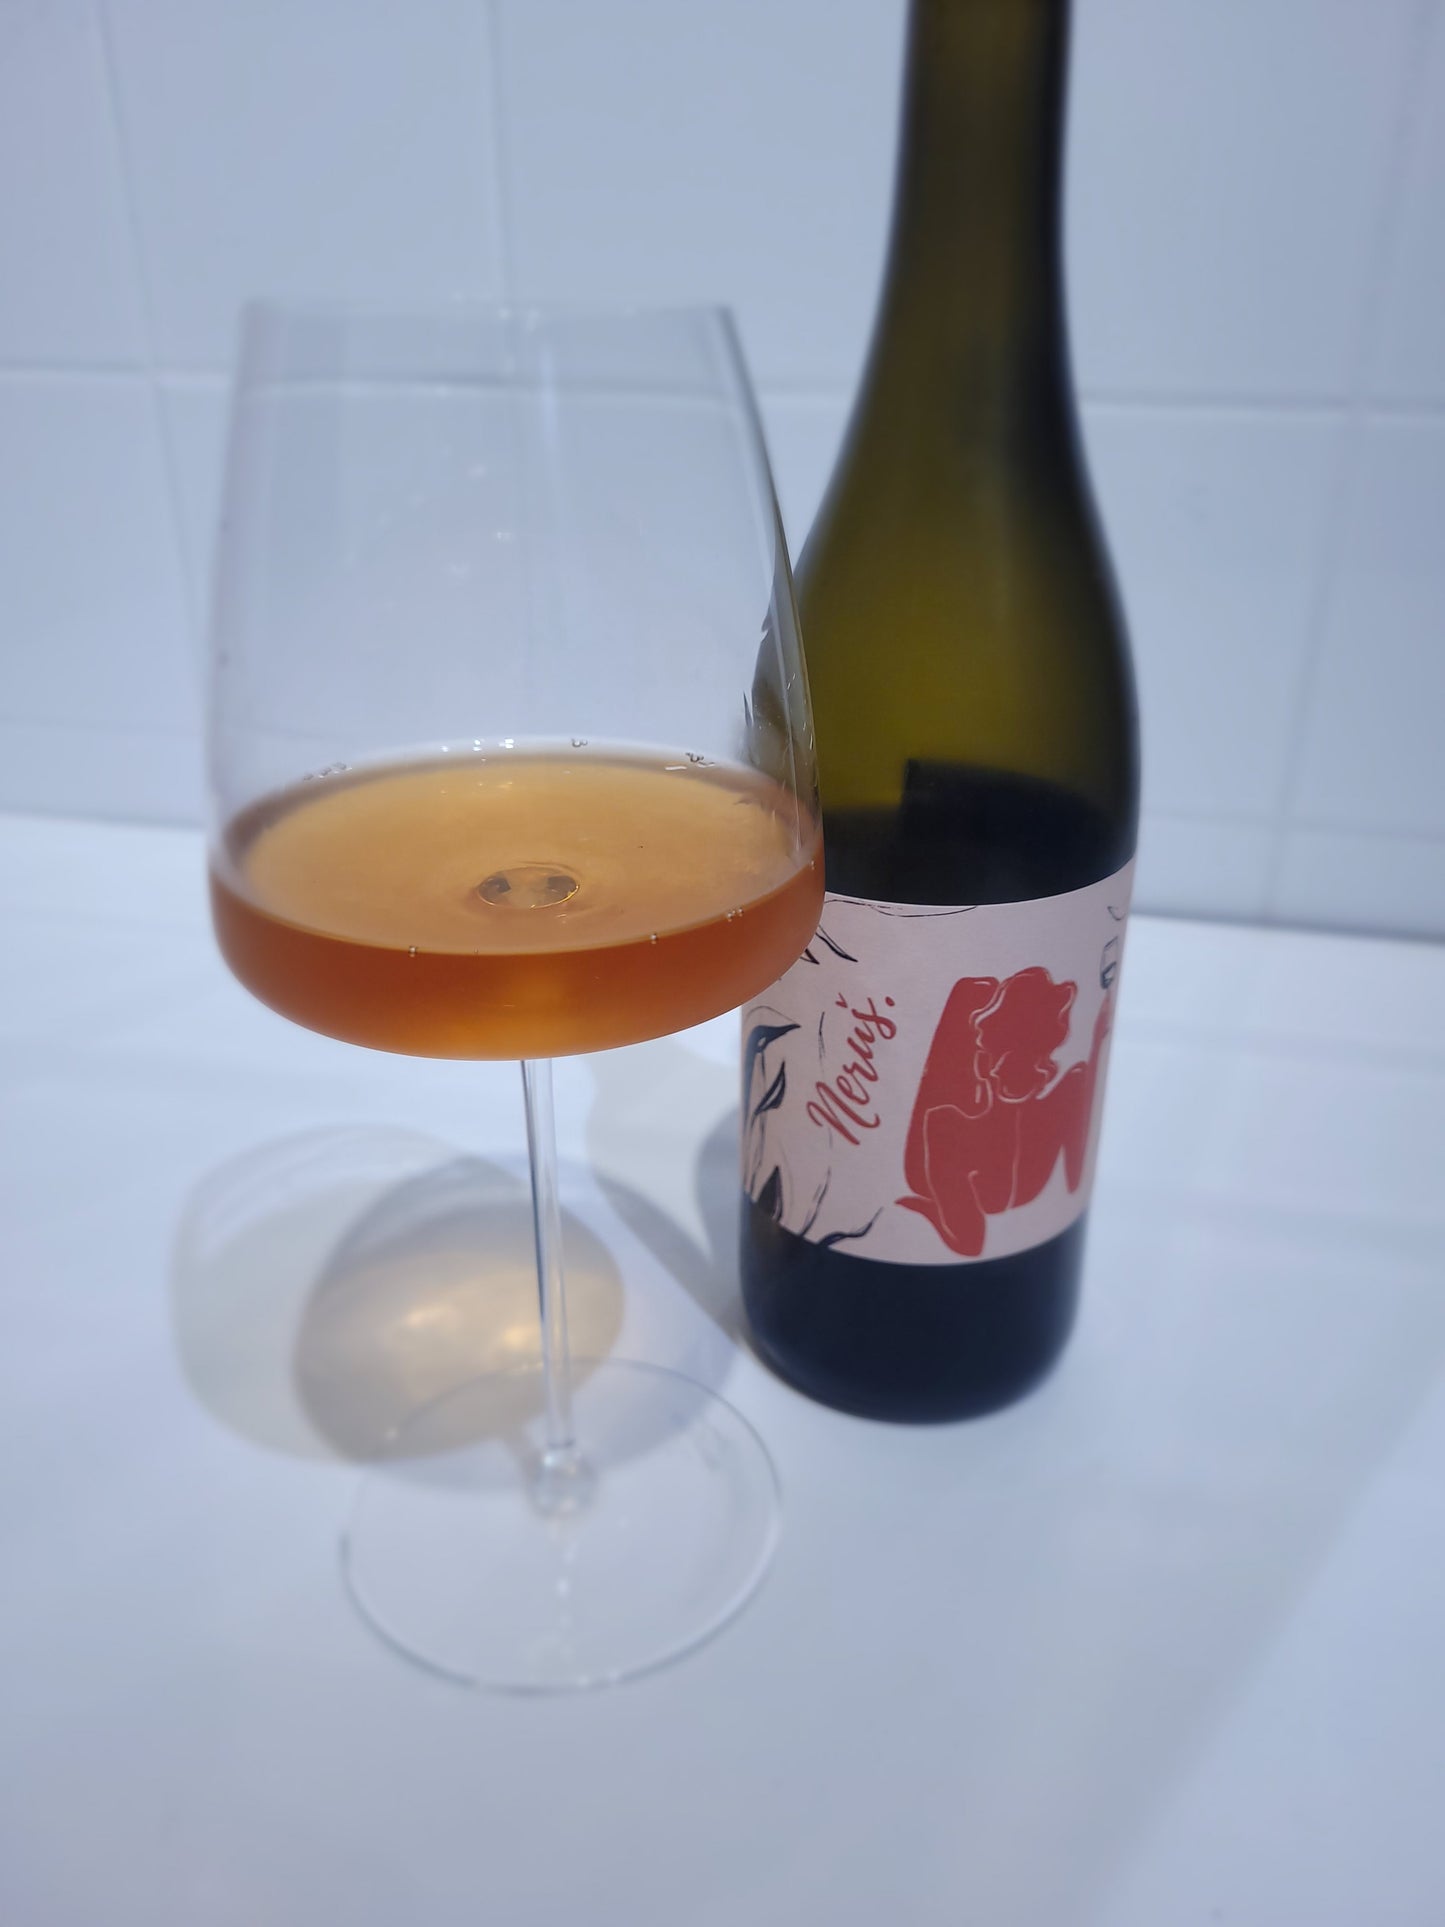 Měřínský winery - Neruš Orange 2020 (Don't disturb me)